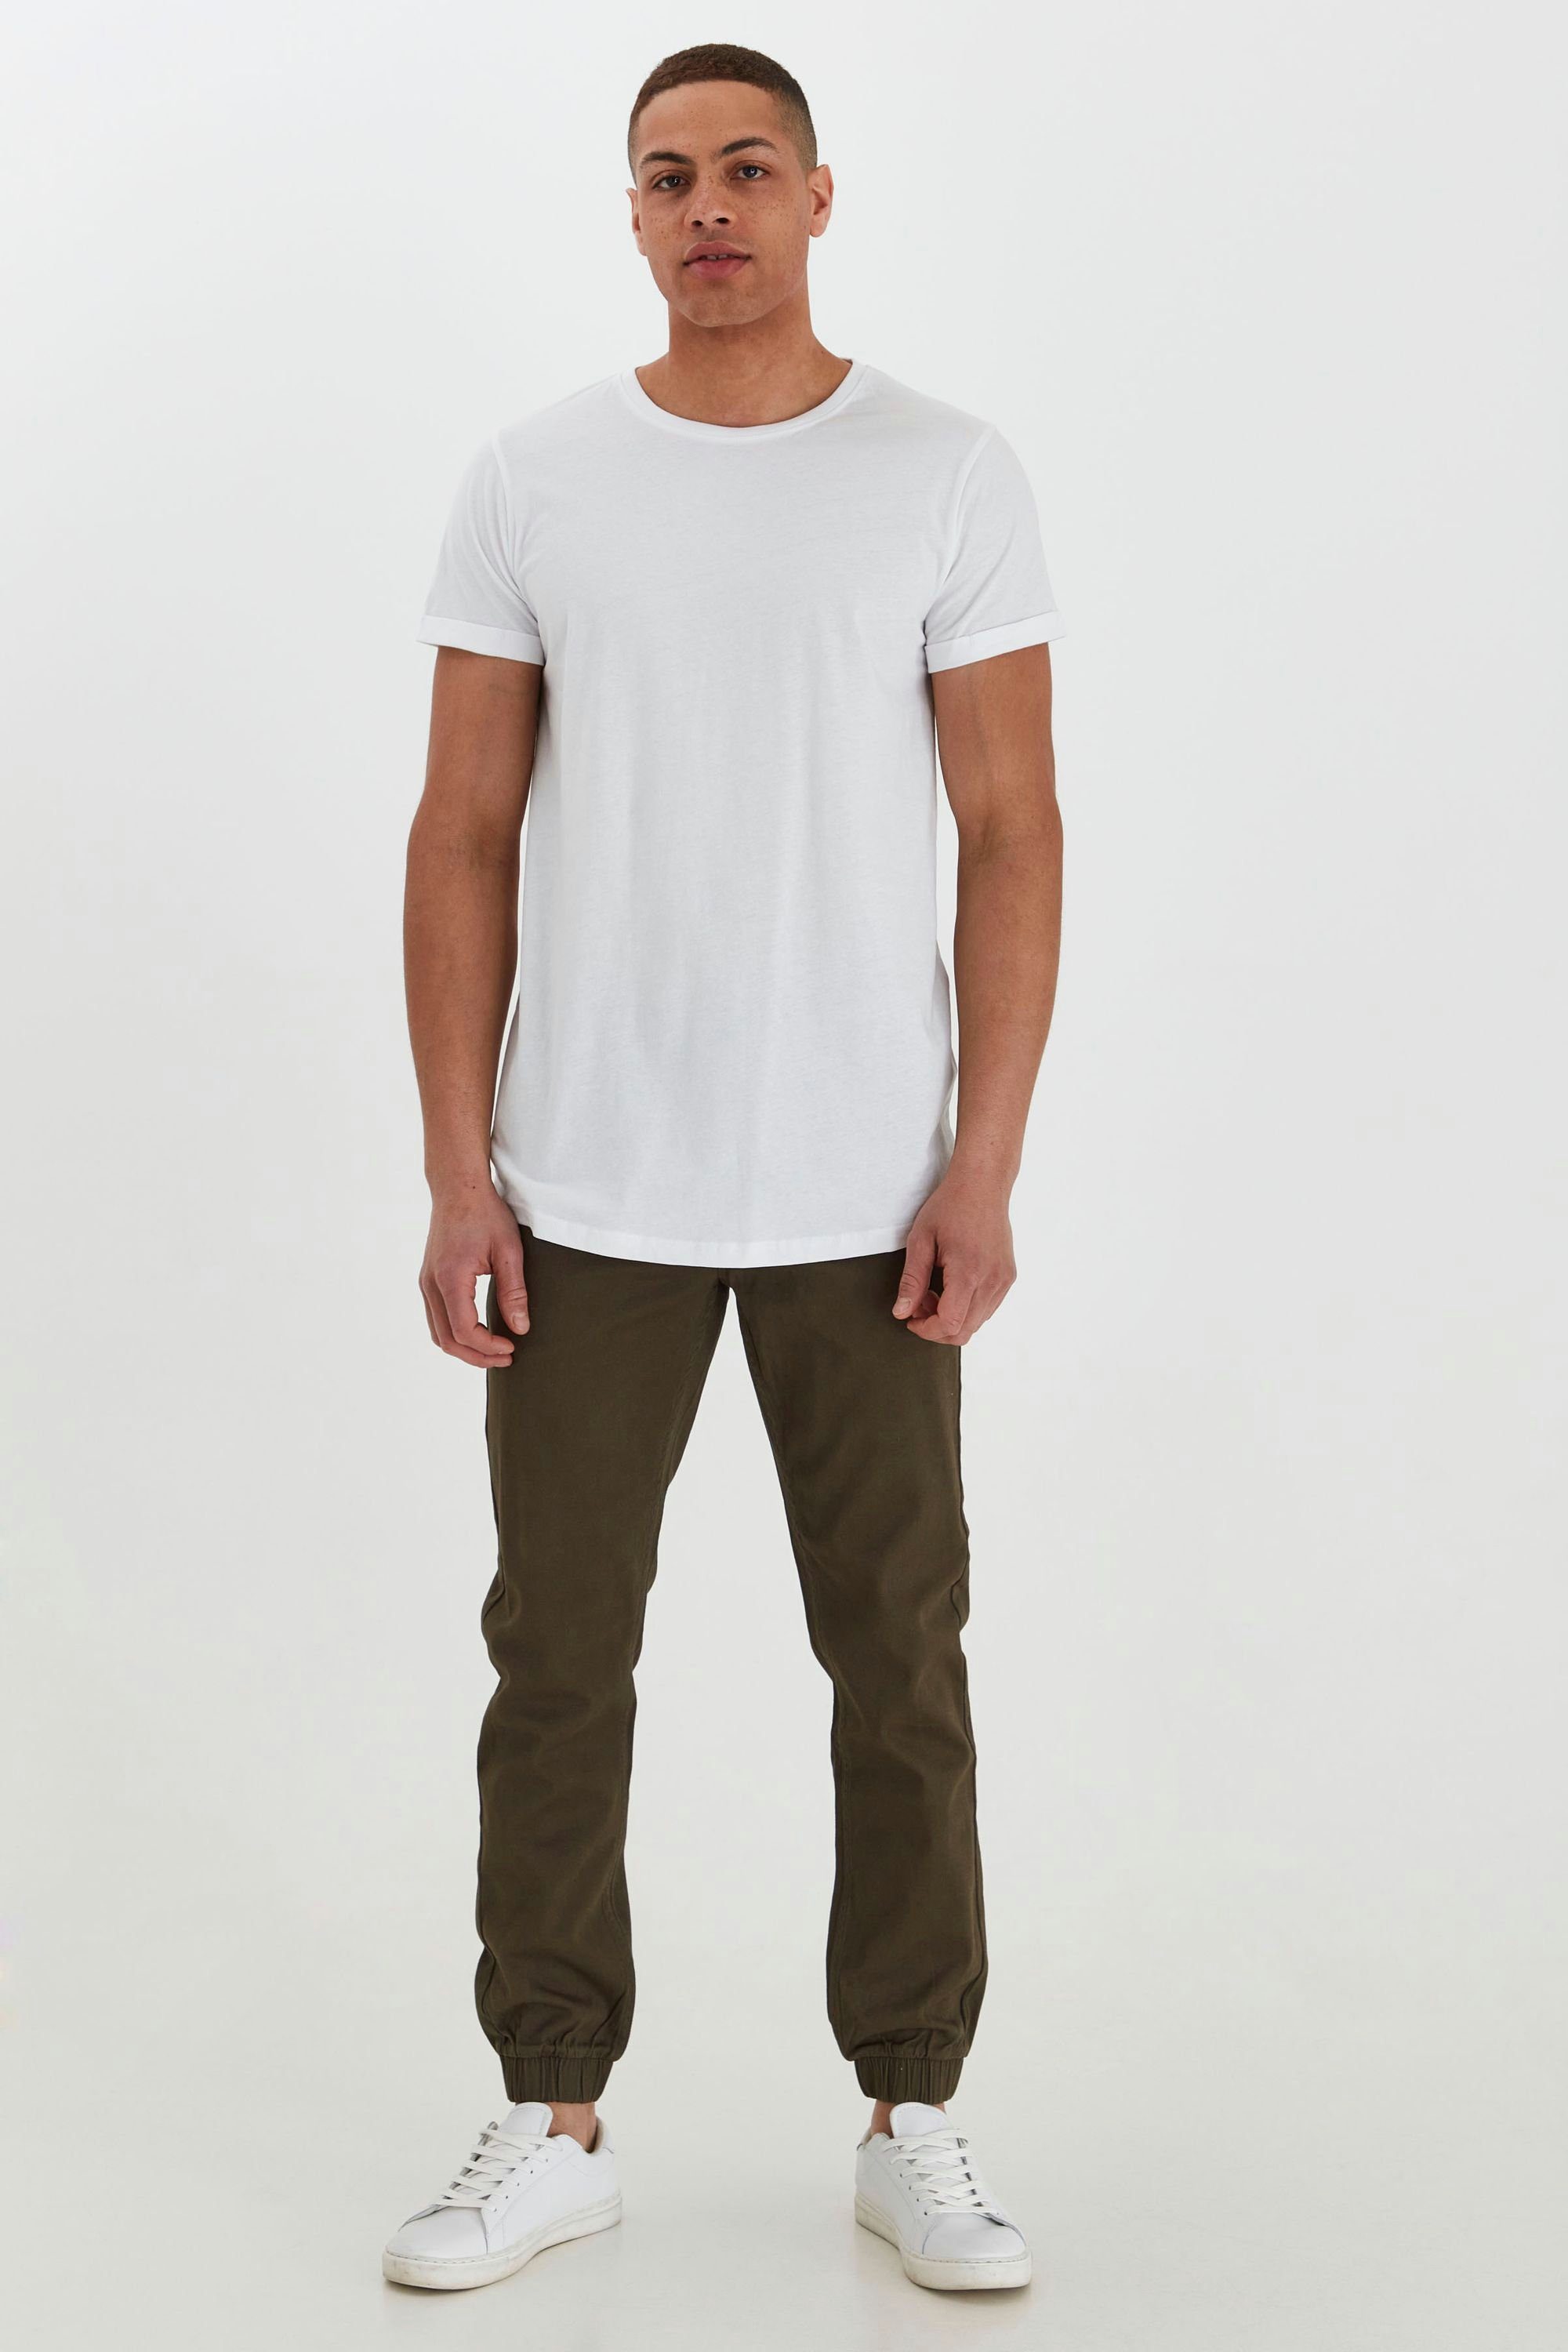 T-Shirt !Solid White SDLongo (0001) Longshirt